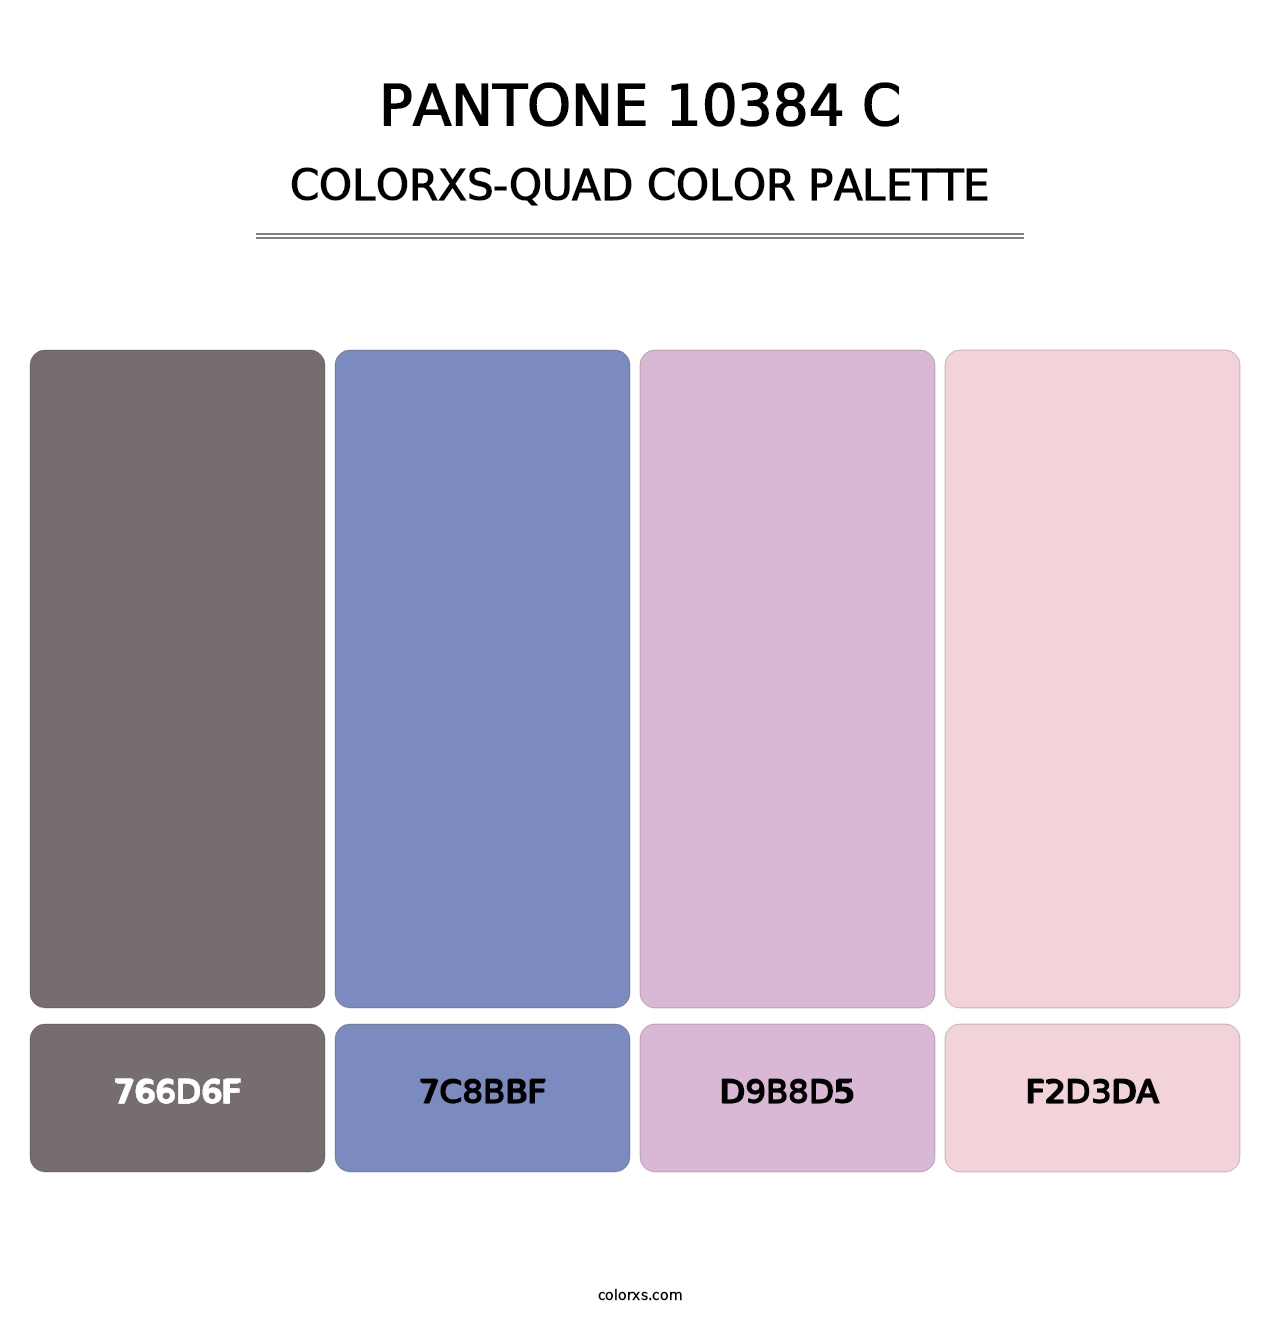 PANTONE 10384 C - Colorxs Quad Palette